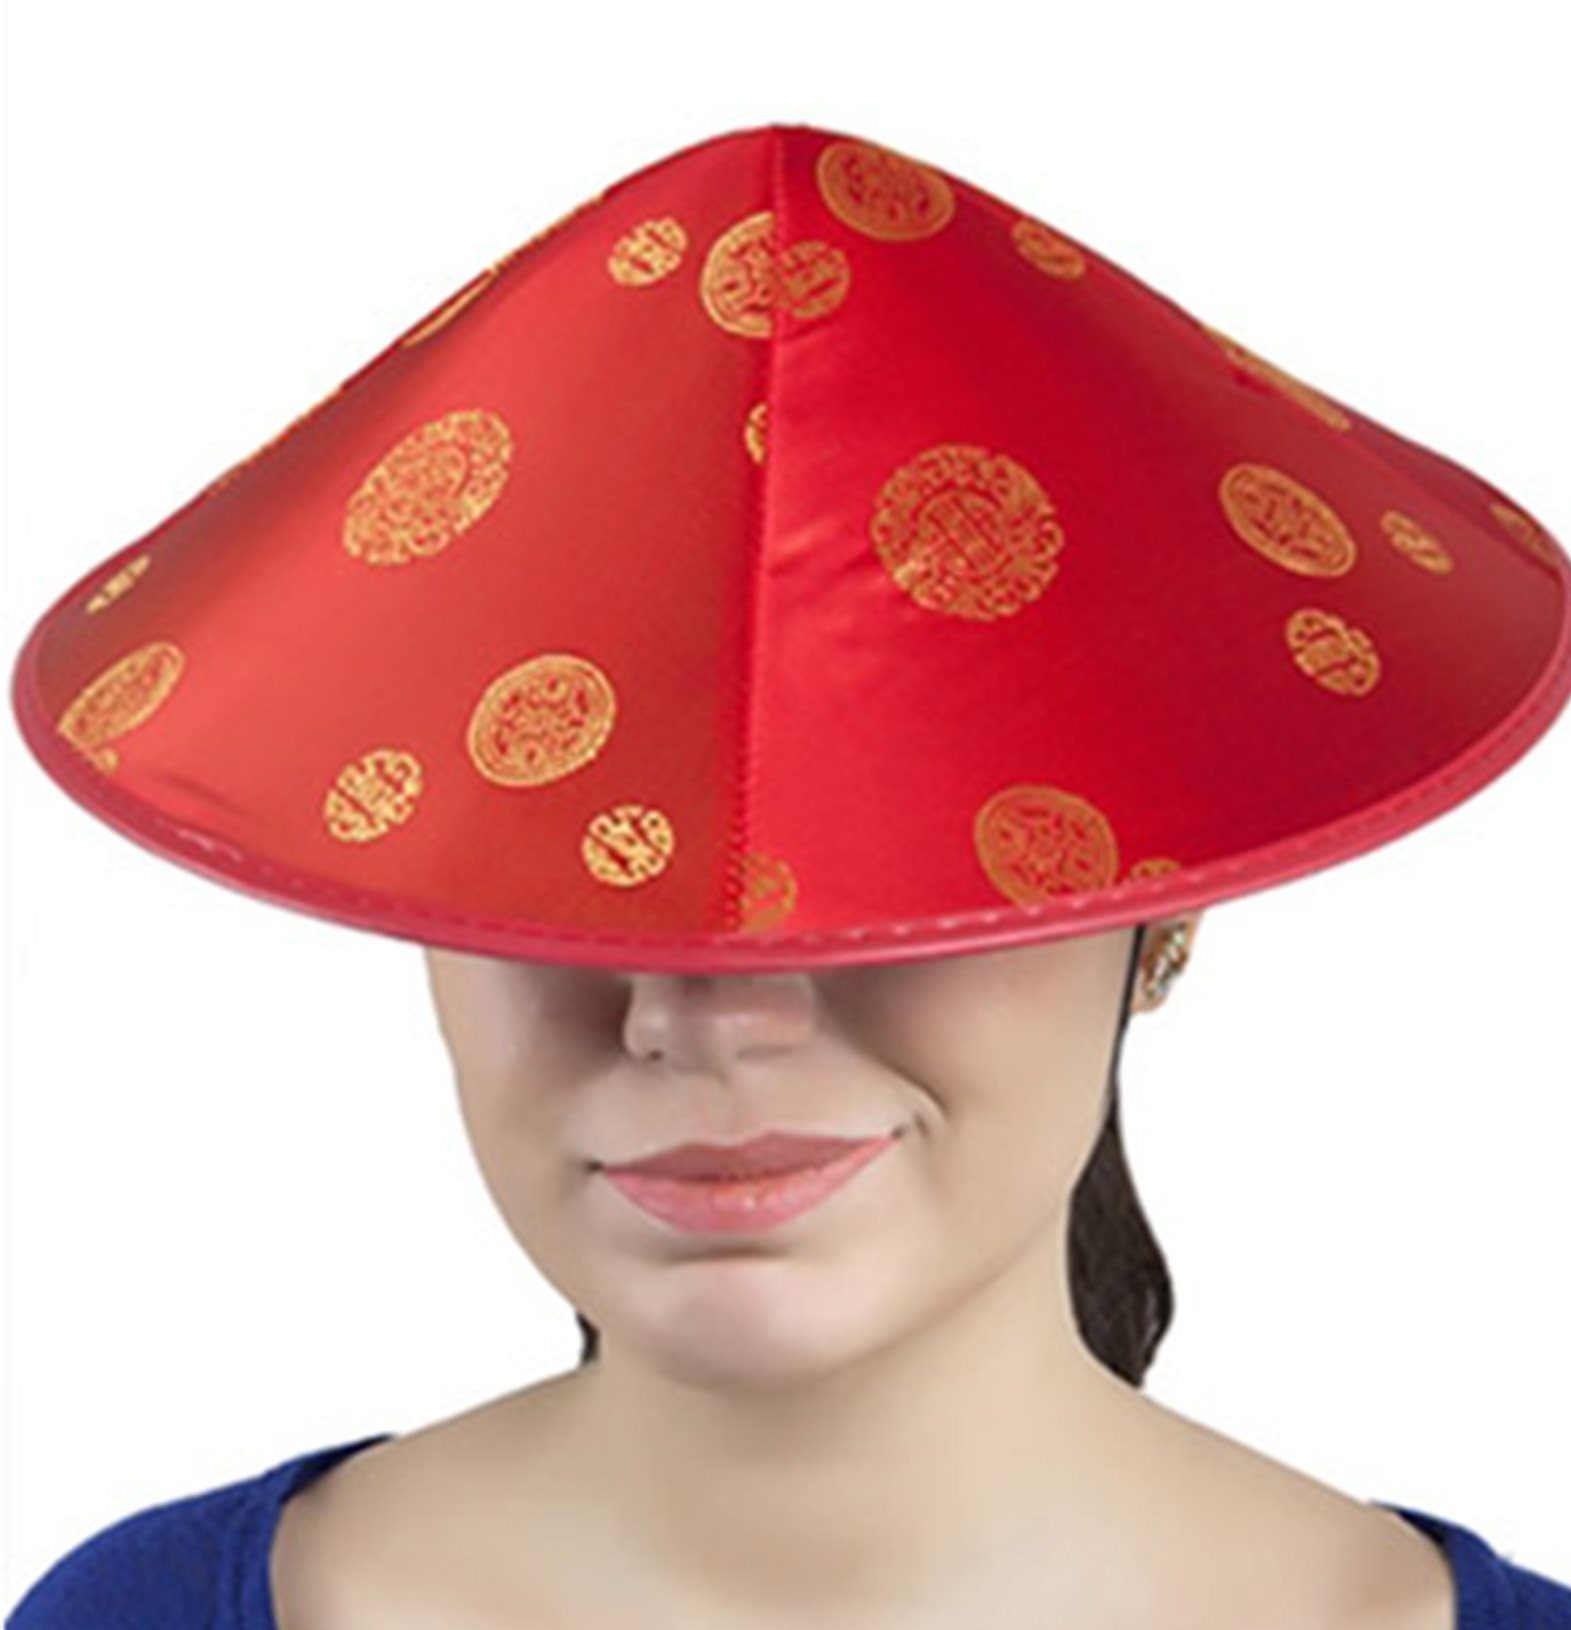 CLZ192 Çinli Şapkası Japon Şapkası (4172)